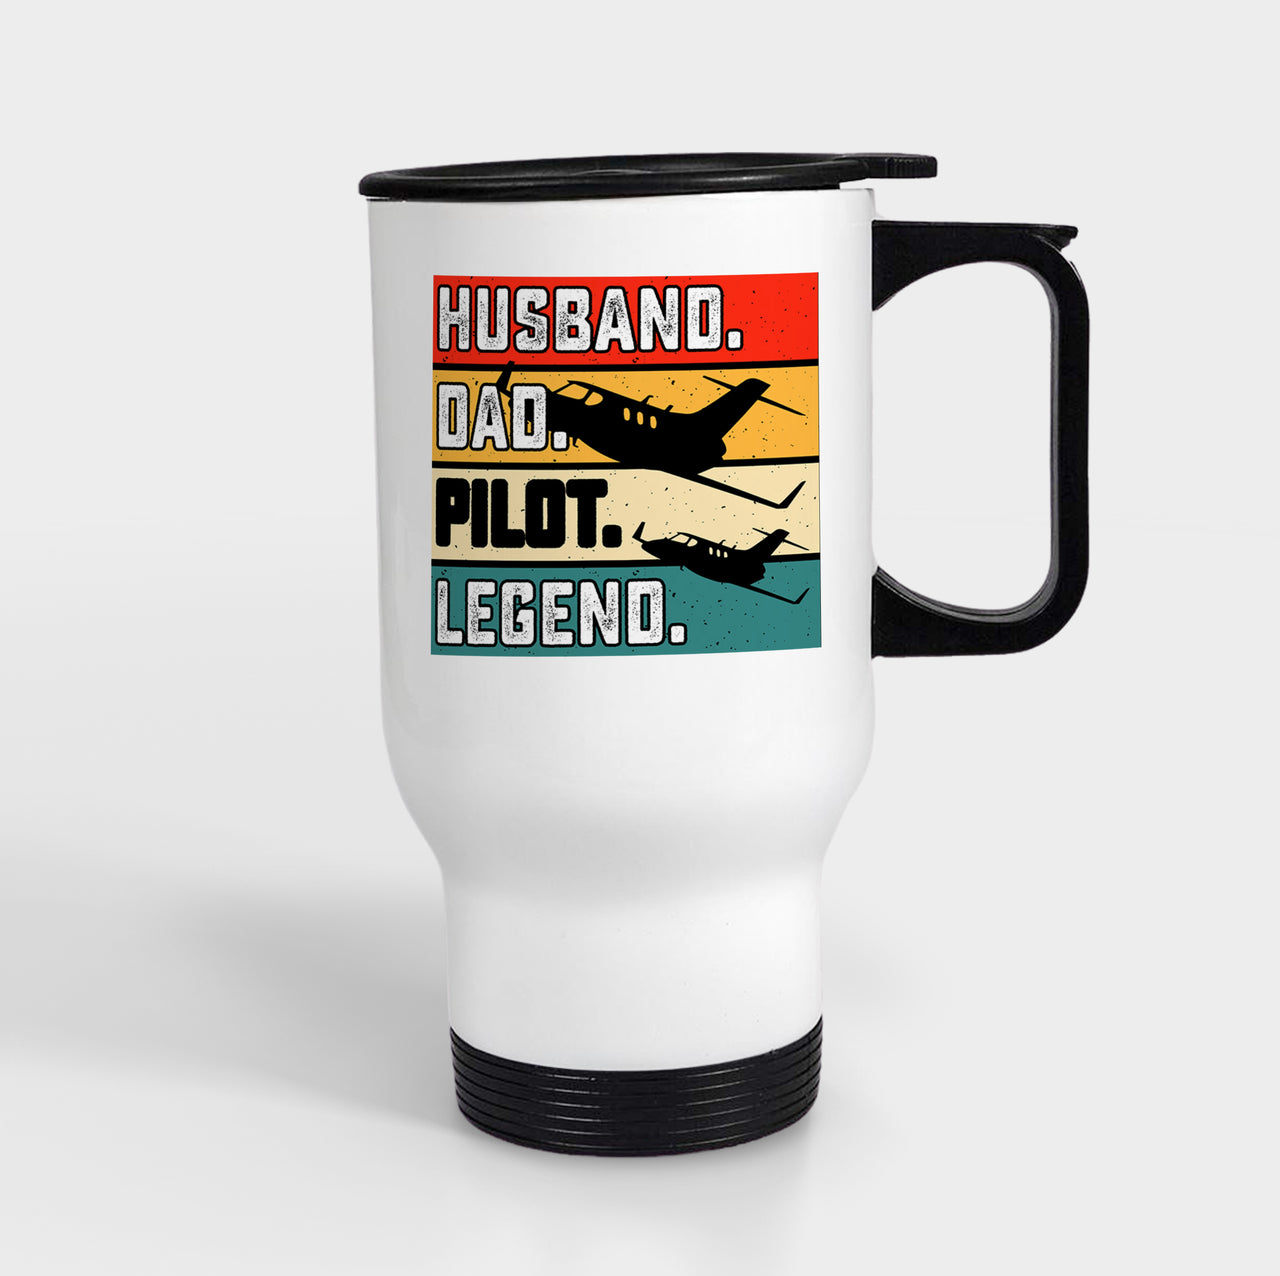 Husband & Dad & Pilot & Legend Designed Travel Mugs (With Holder)